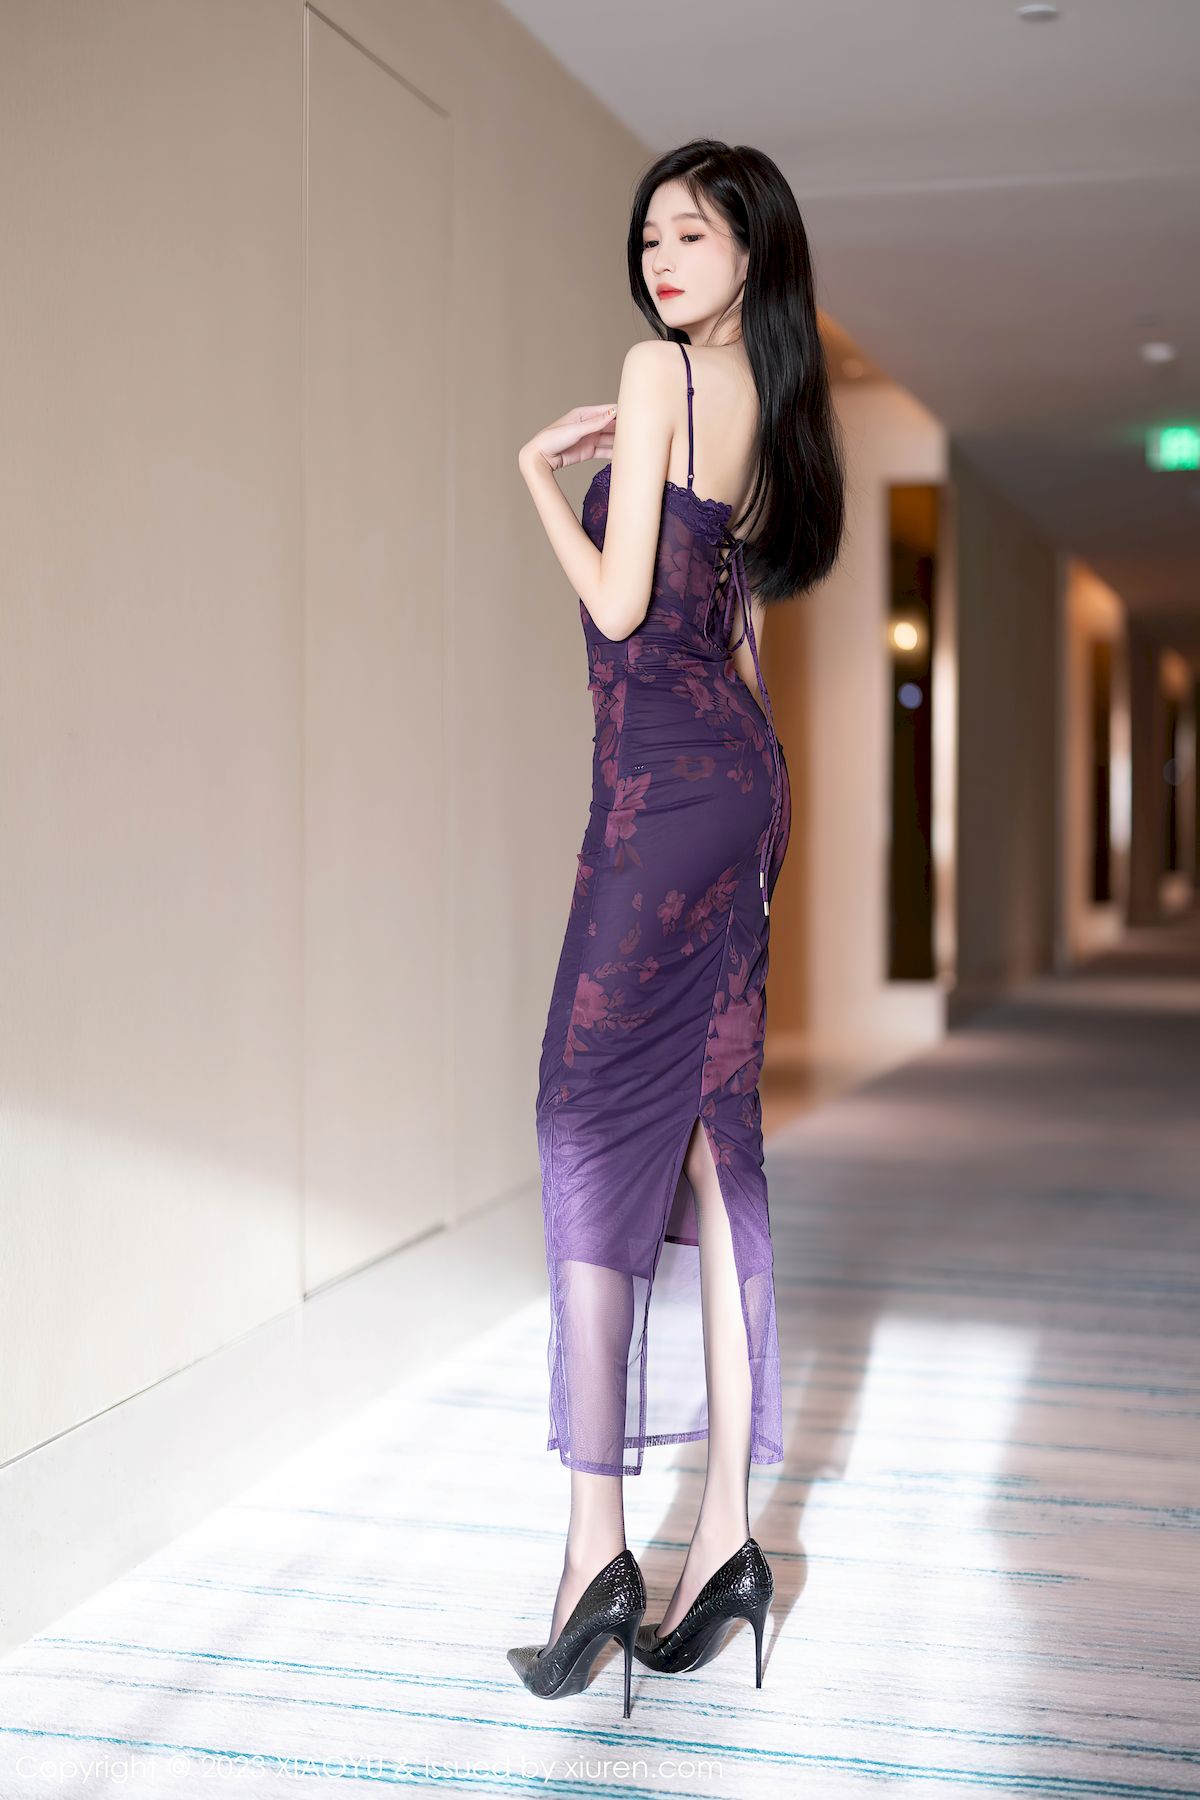 程程程-紫色吊带长裙清秀身材性感写真